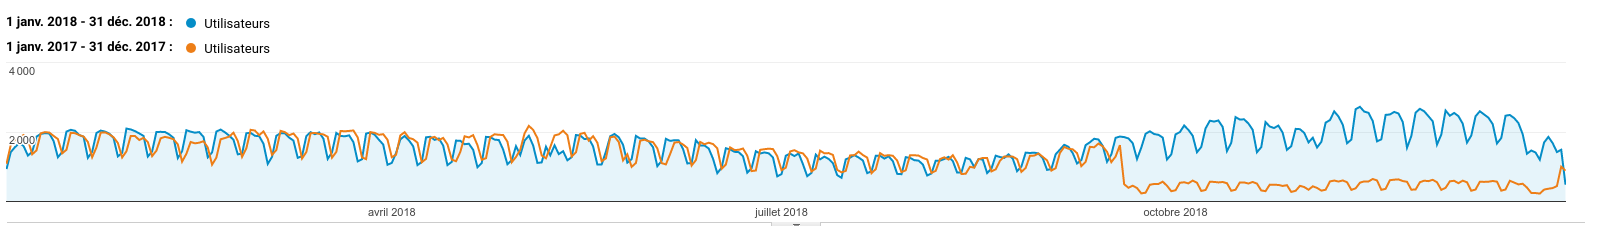 Évolution des visiteurs uniques par mois, en 2017 (orange) et 2018 (bleu)